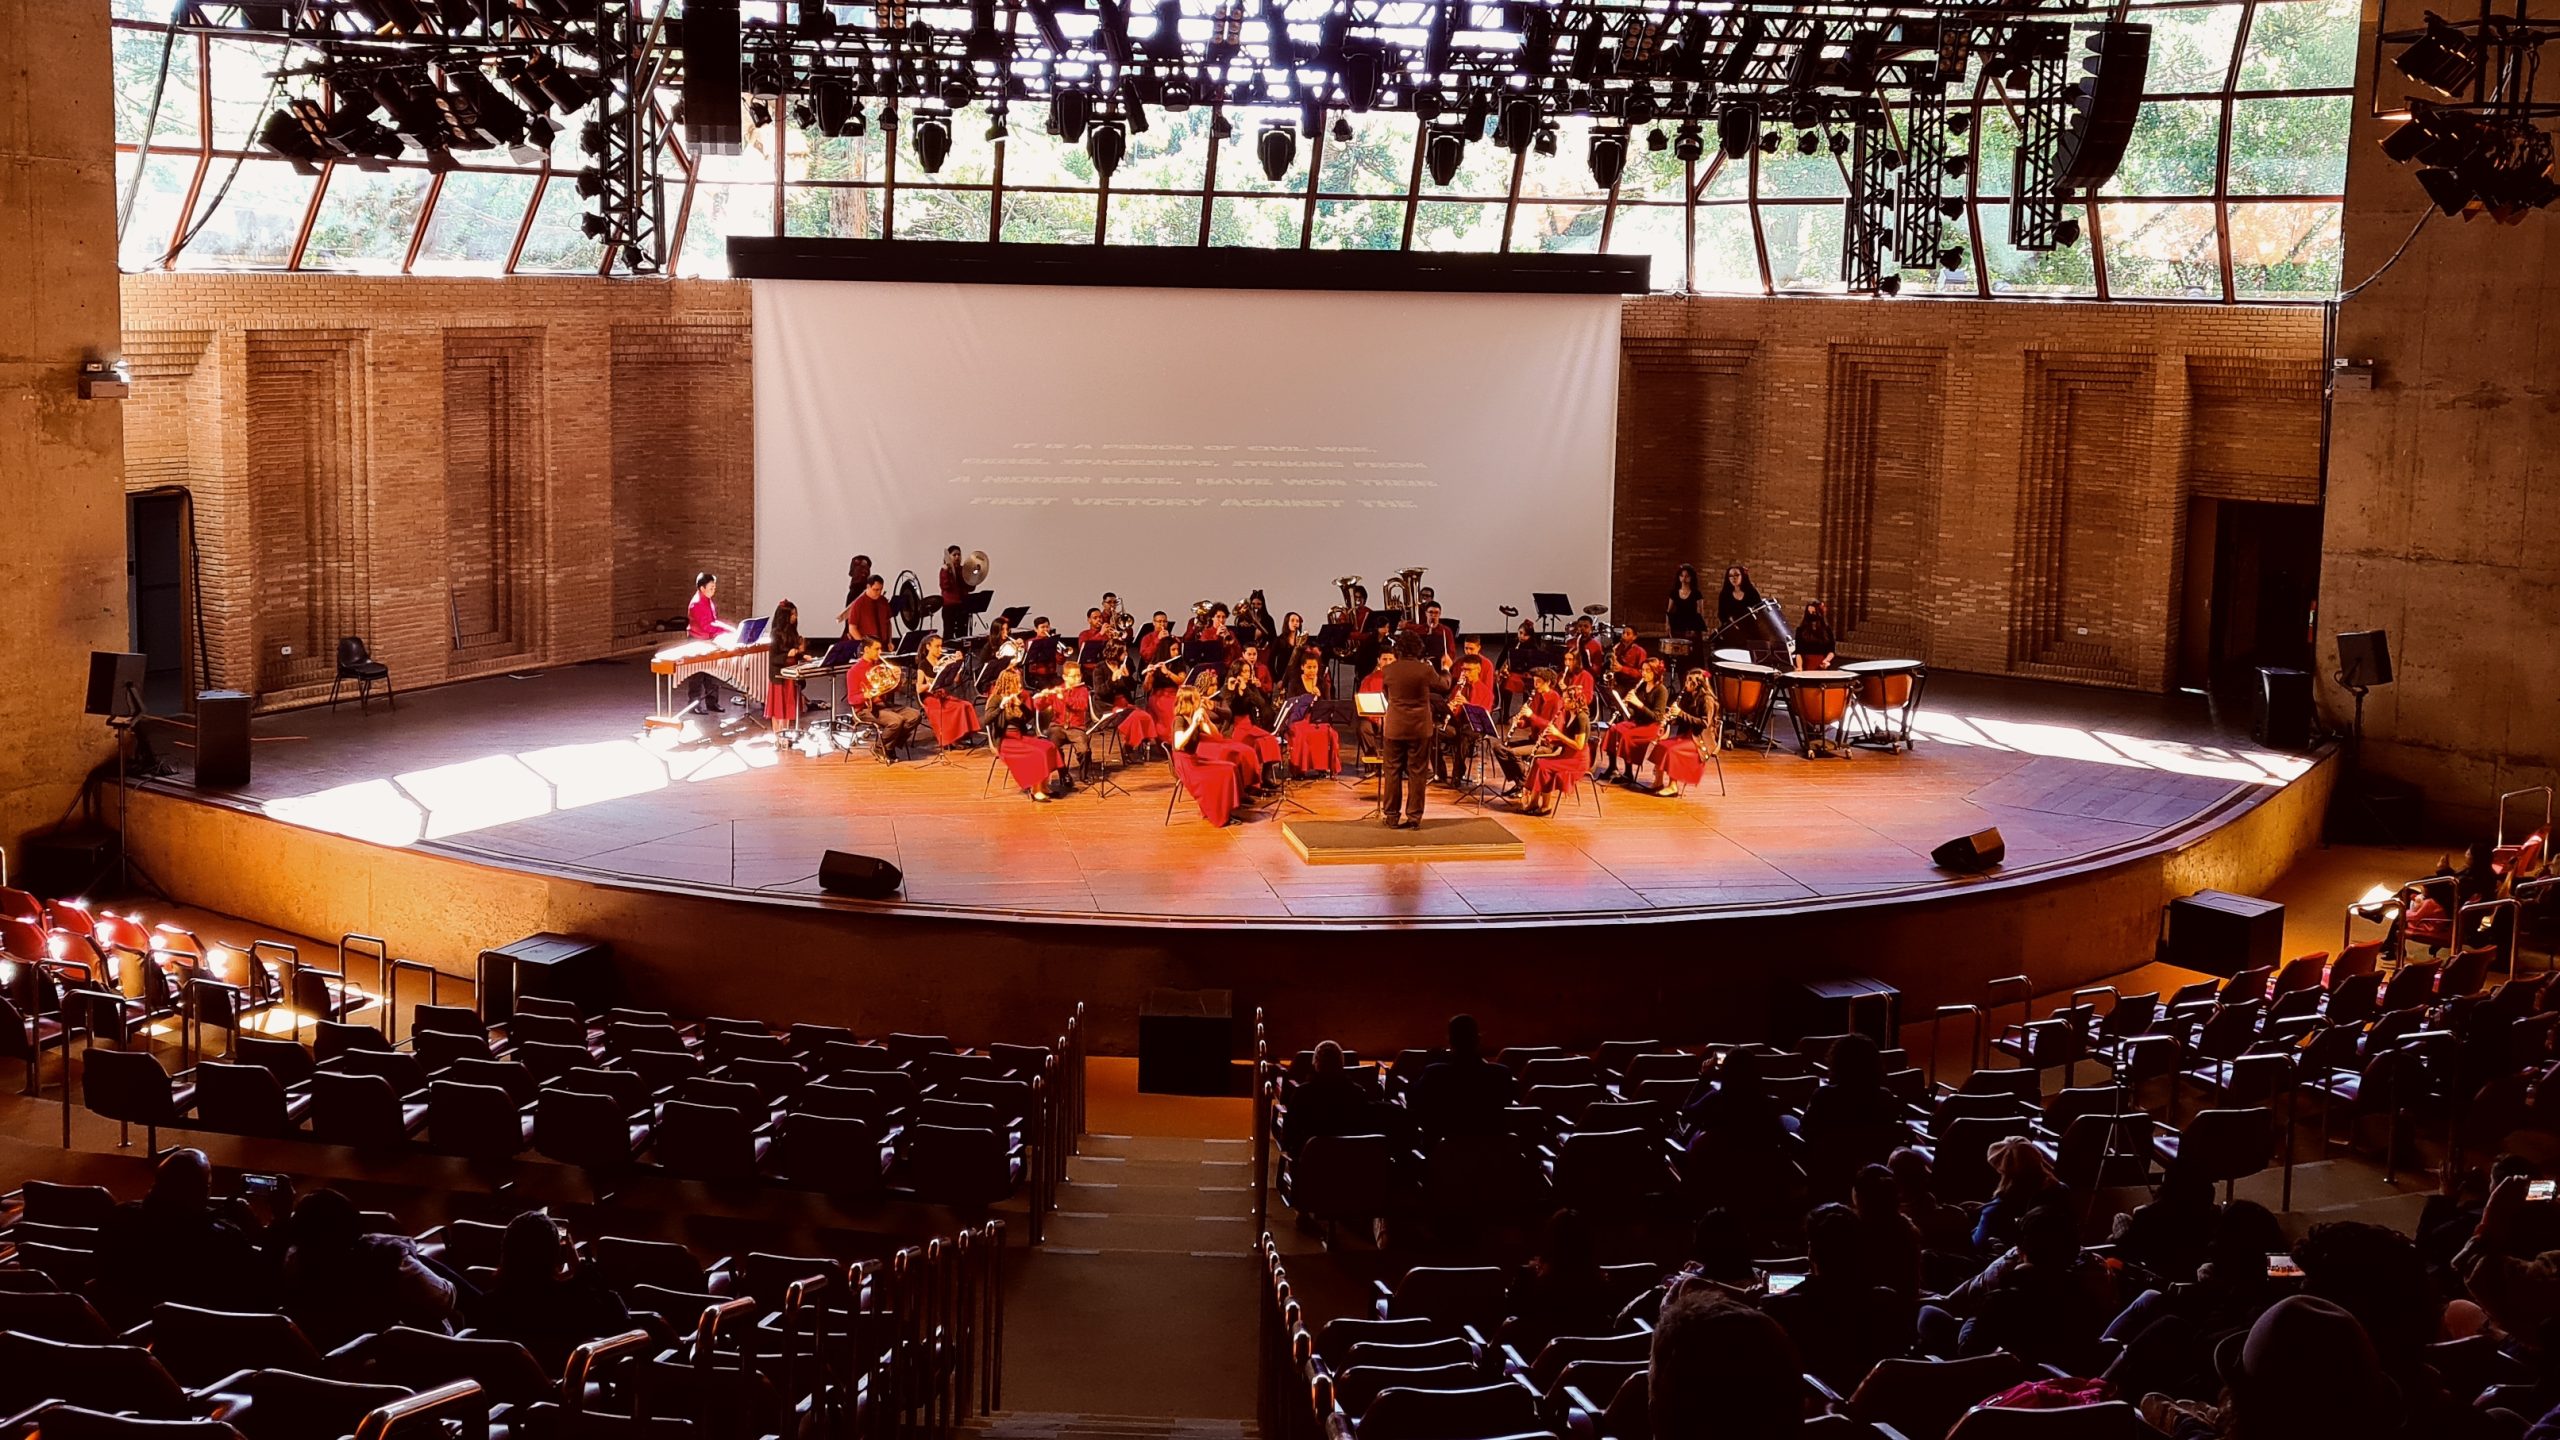 Crianças e adolescentes sentados em um palco tocam diferentes tipos de instrumentos, compondo uma orquestra. No centro, há uma homem de preto que faz a regência das crianças.